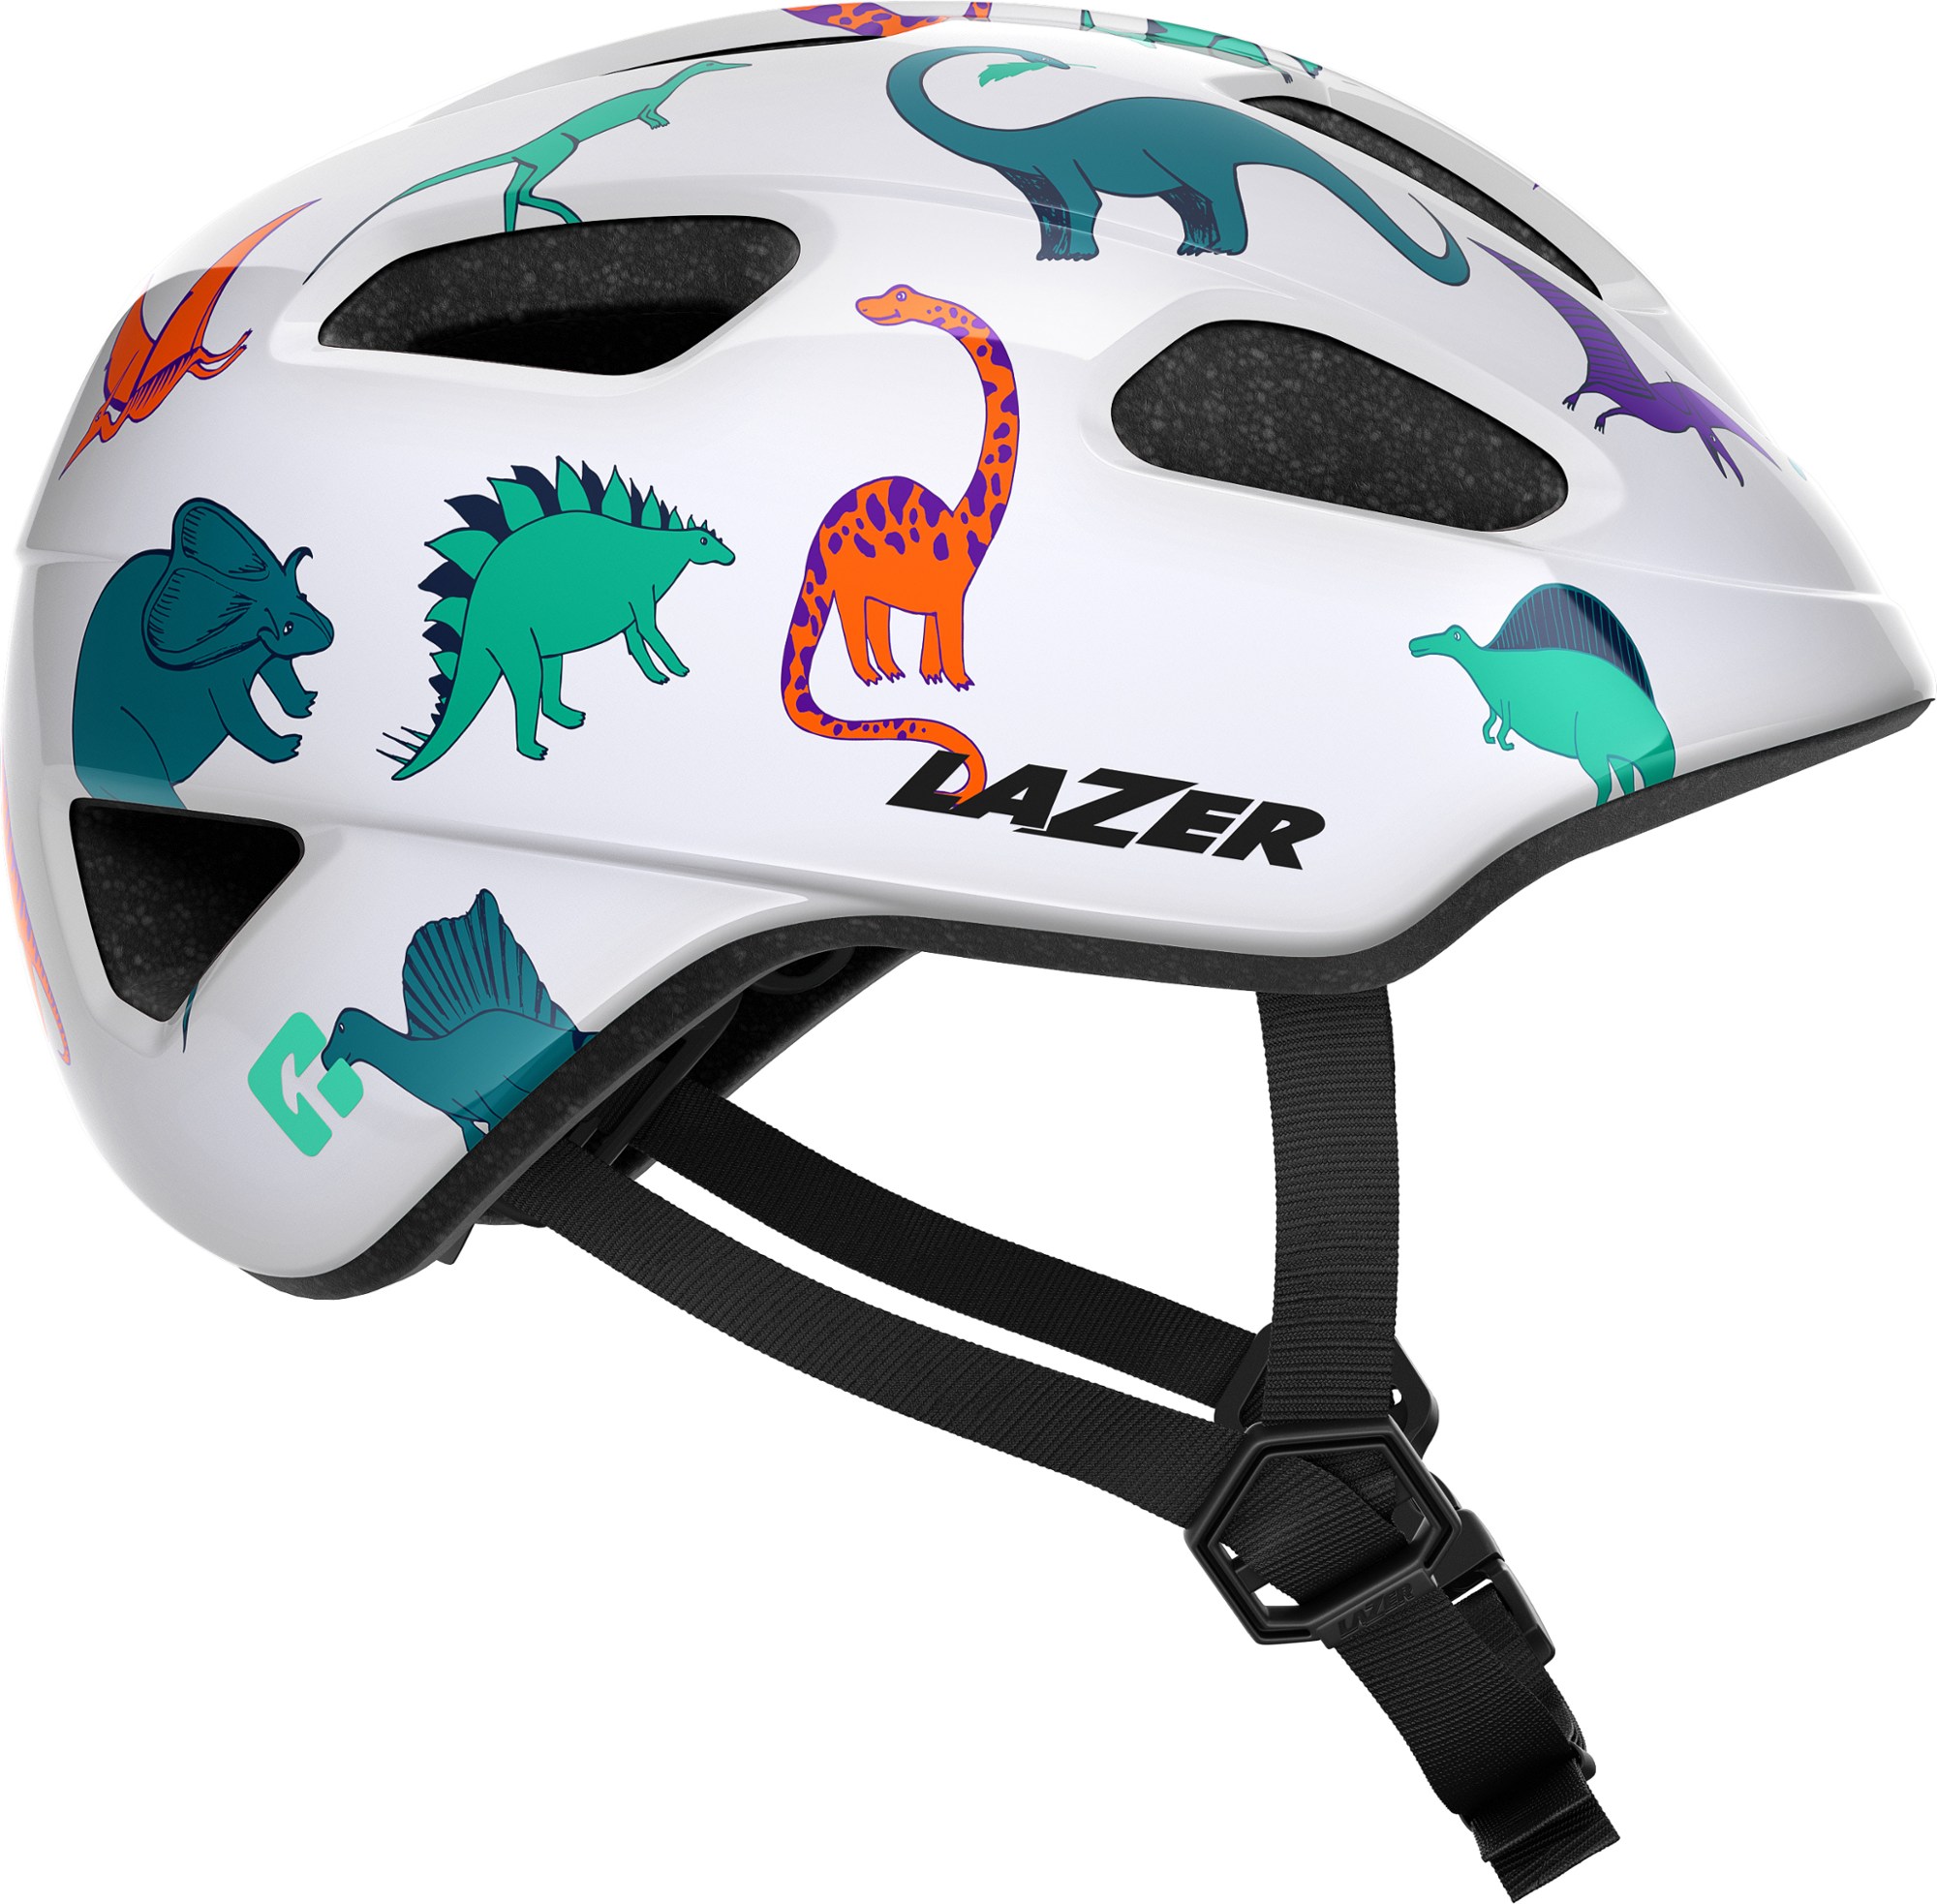 шлем велосипедный lazer coyote мат темно серый размер s blc2217888921 Велосипедный шлем Pnut KinetiCore — для малышей Lazer, мультиколор